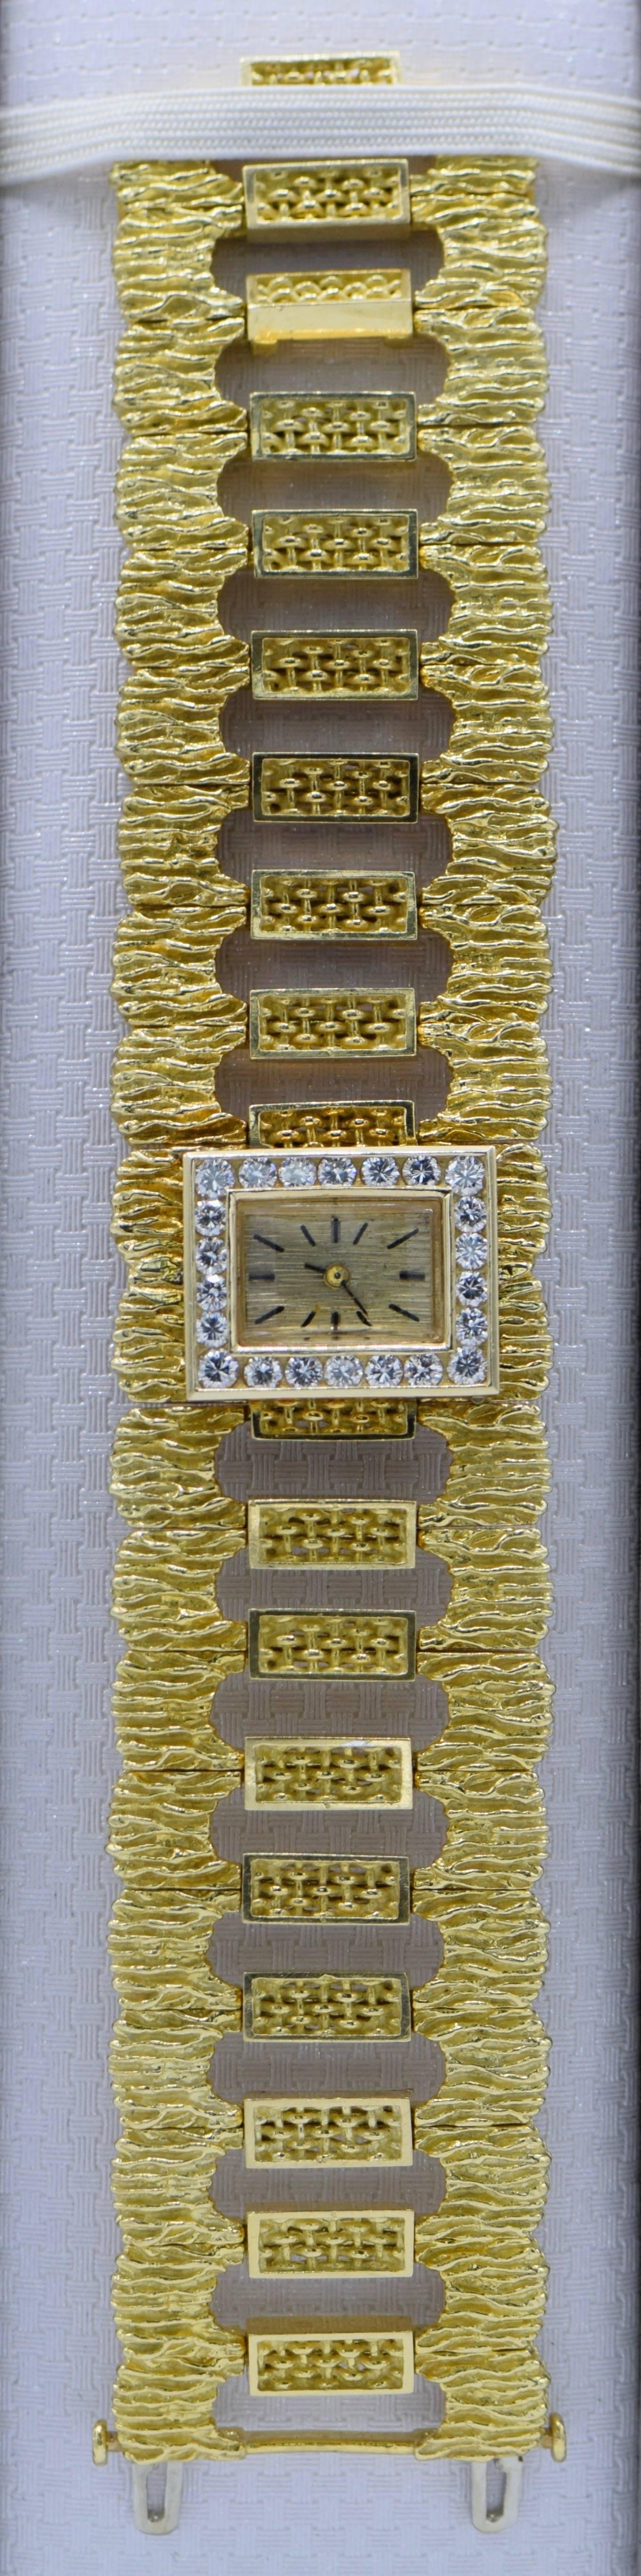 Armbanduhr aus 18 Karat Gold und Diamanten

Gewicht des Diamanten: 1,10 Karat 

Weiße Farbe - D-E

Saubere Klarheit: VS

Arbeitsbedingung 

Kommt mit extra Link 